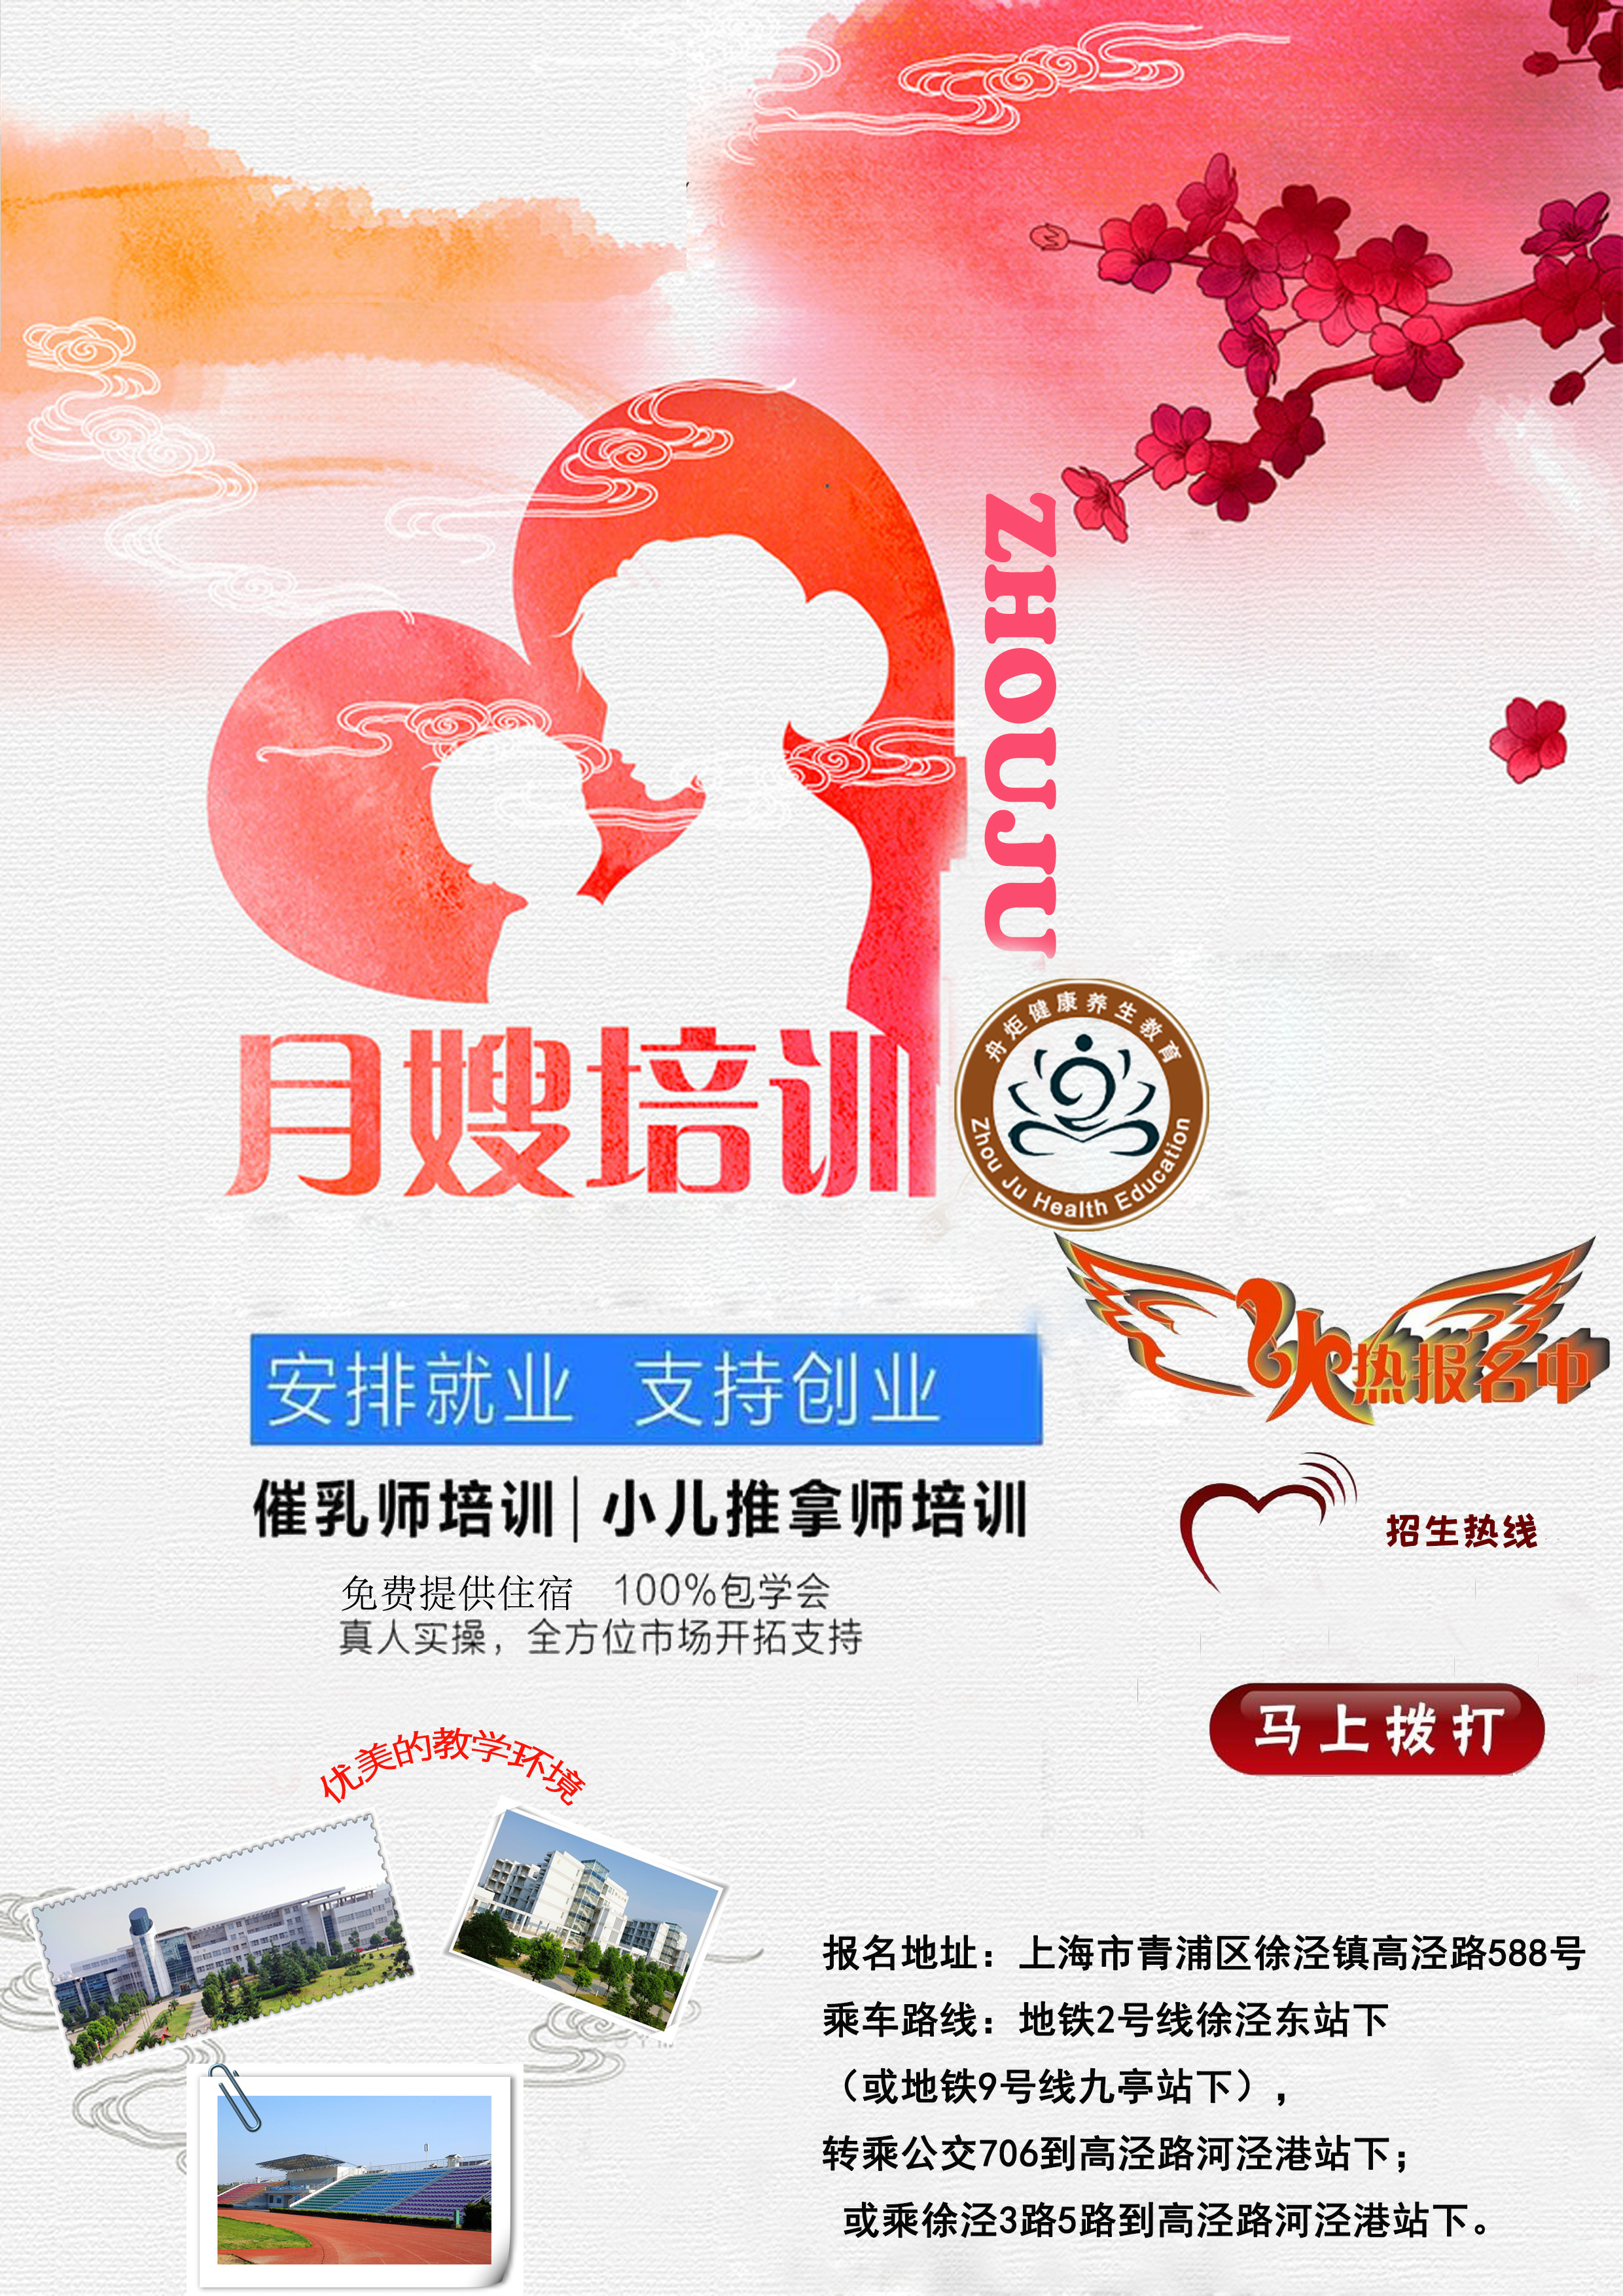 上海母婴护理师培训@月嫂培训多少钱@上海母婴护理师培训哪家好